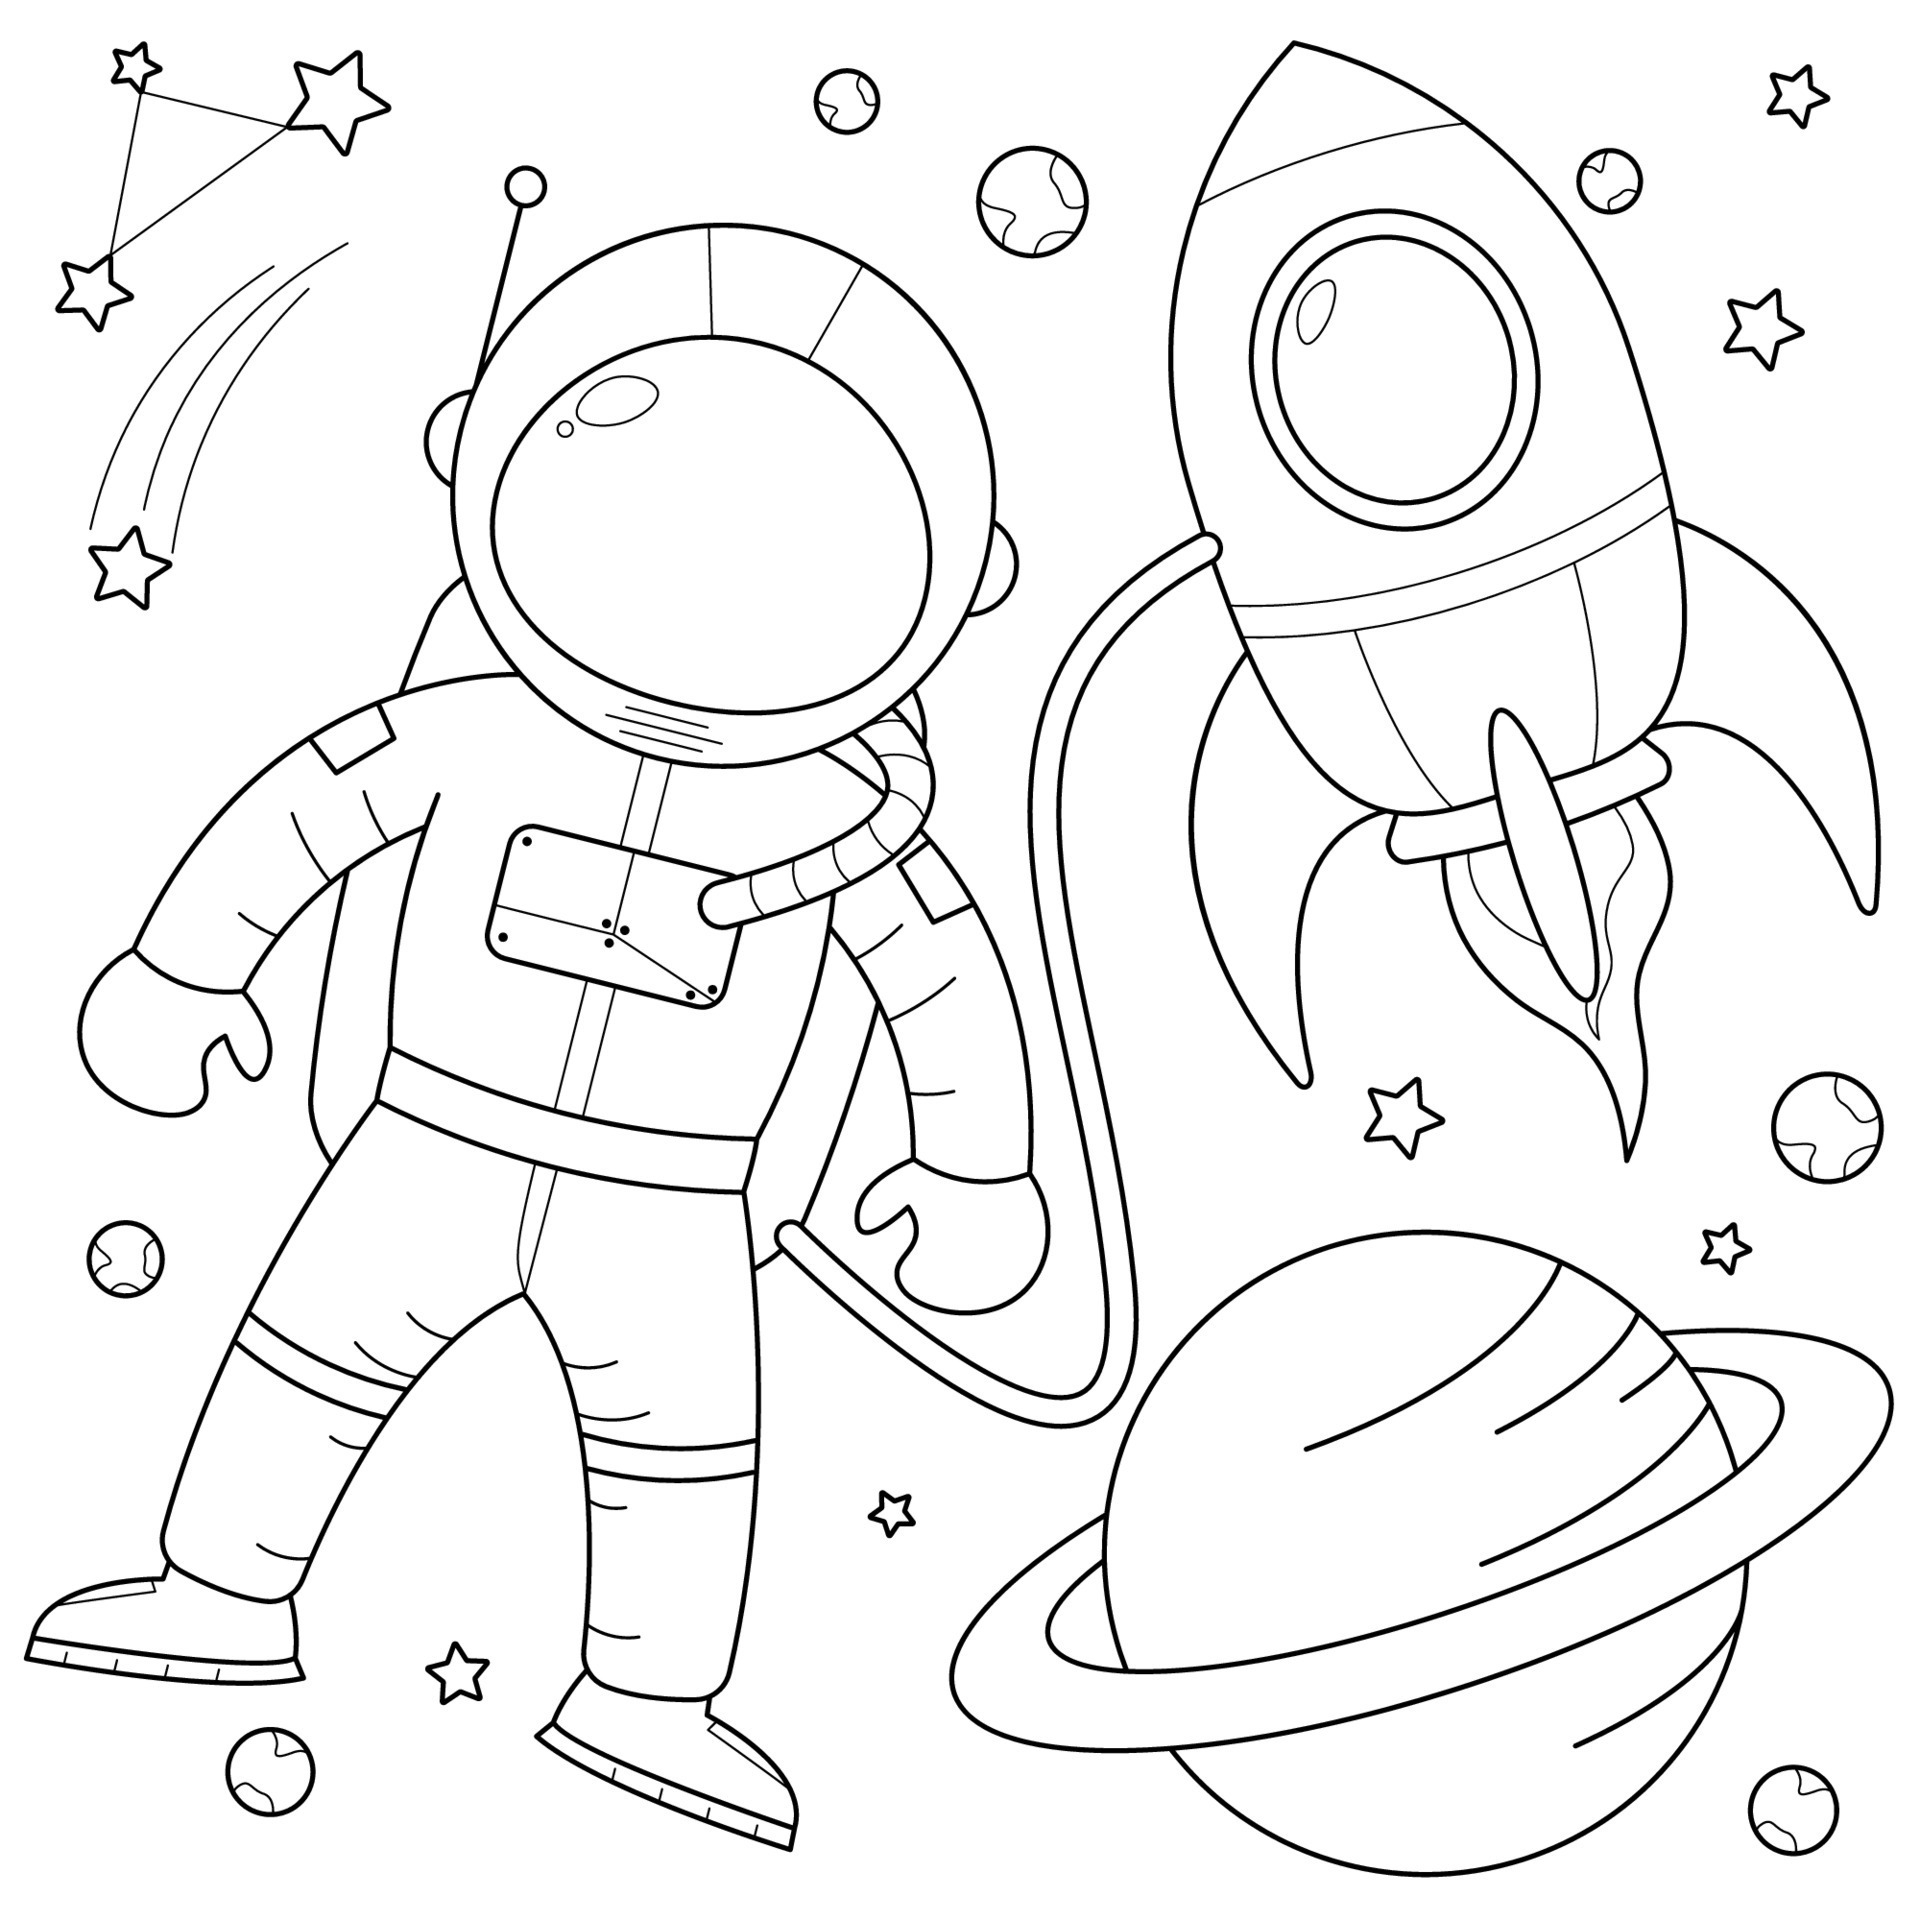 Шаблон космонавта для поделки ко дню космонавтики. Раскраска. В космосе. Космонавт раскраска для детей. Раскраска космонавт в космосе. Ракета и космонавт рисунок раскраска.